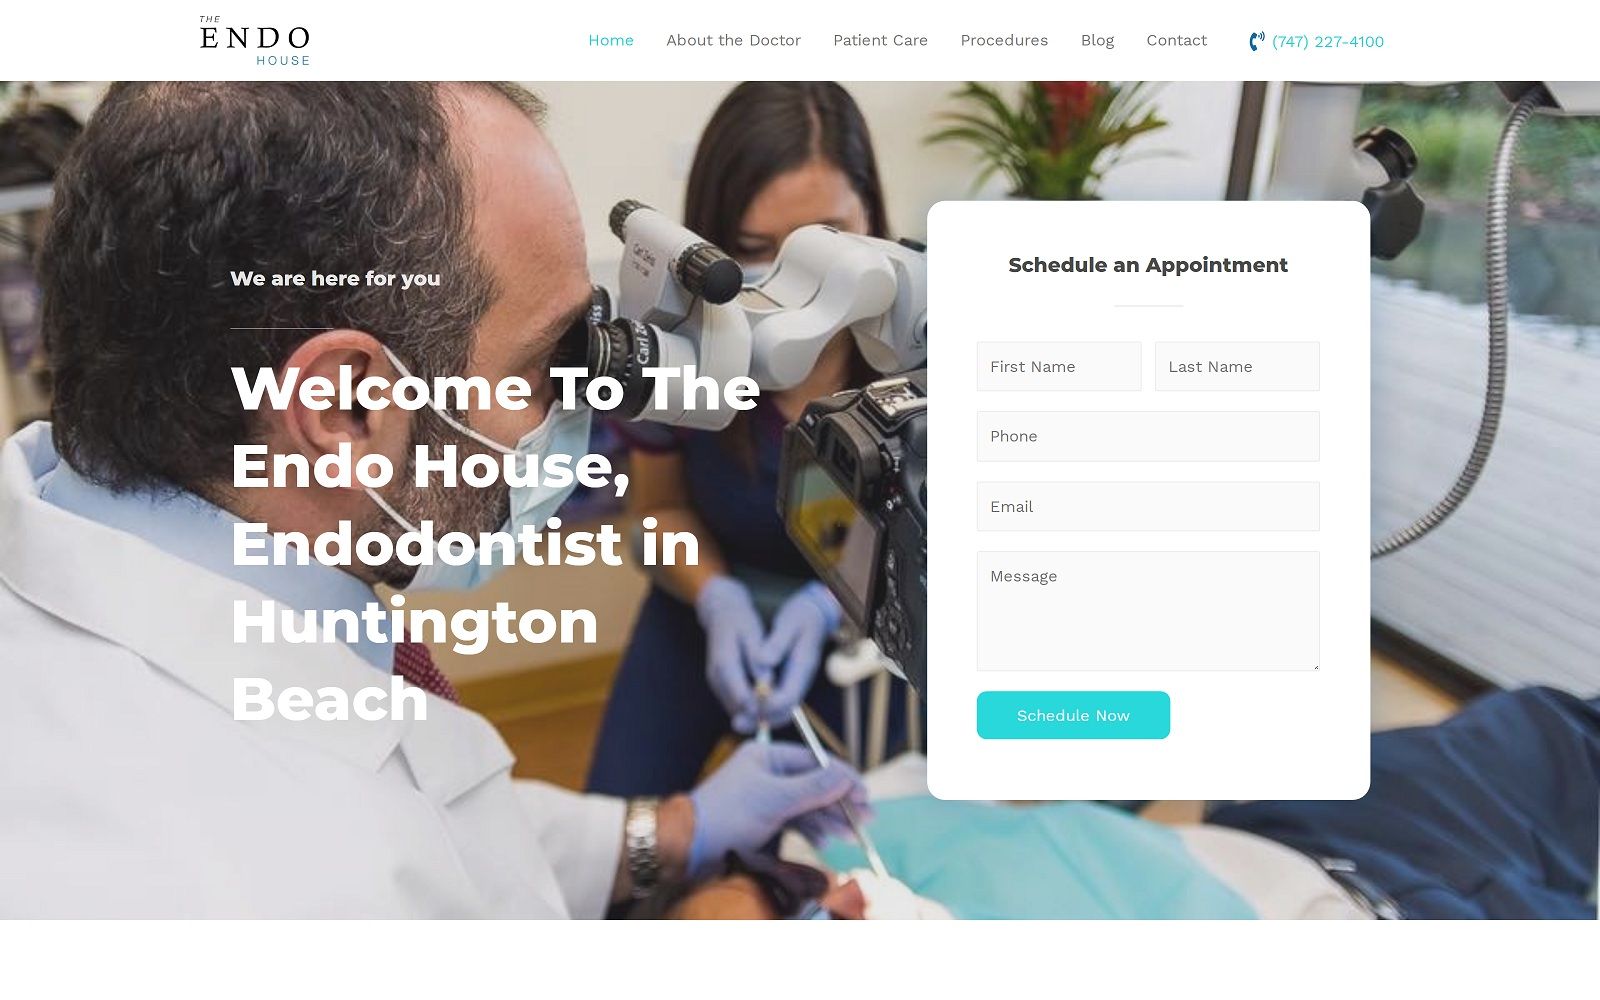 The Screenshot of The Endo House theendohouse.com Dr. Shoreibah Website